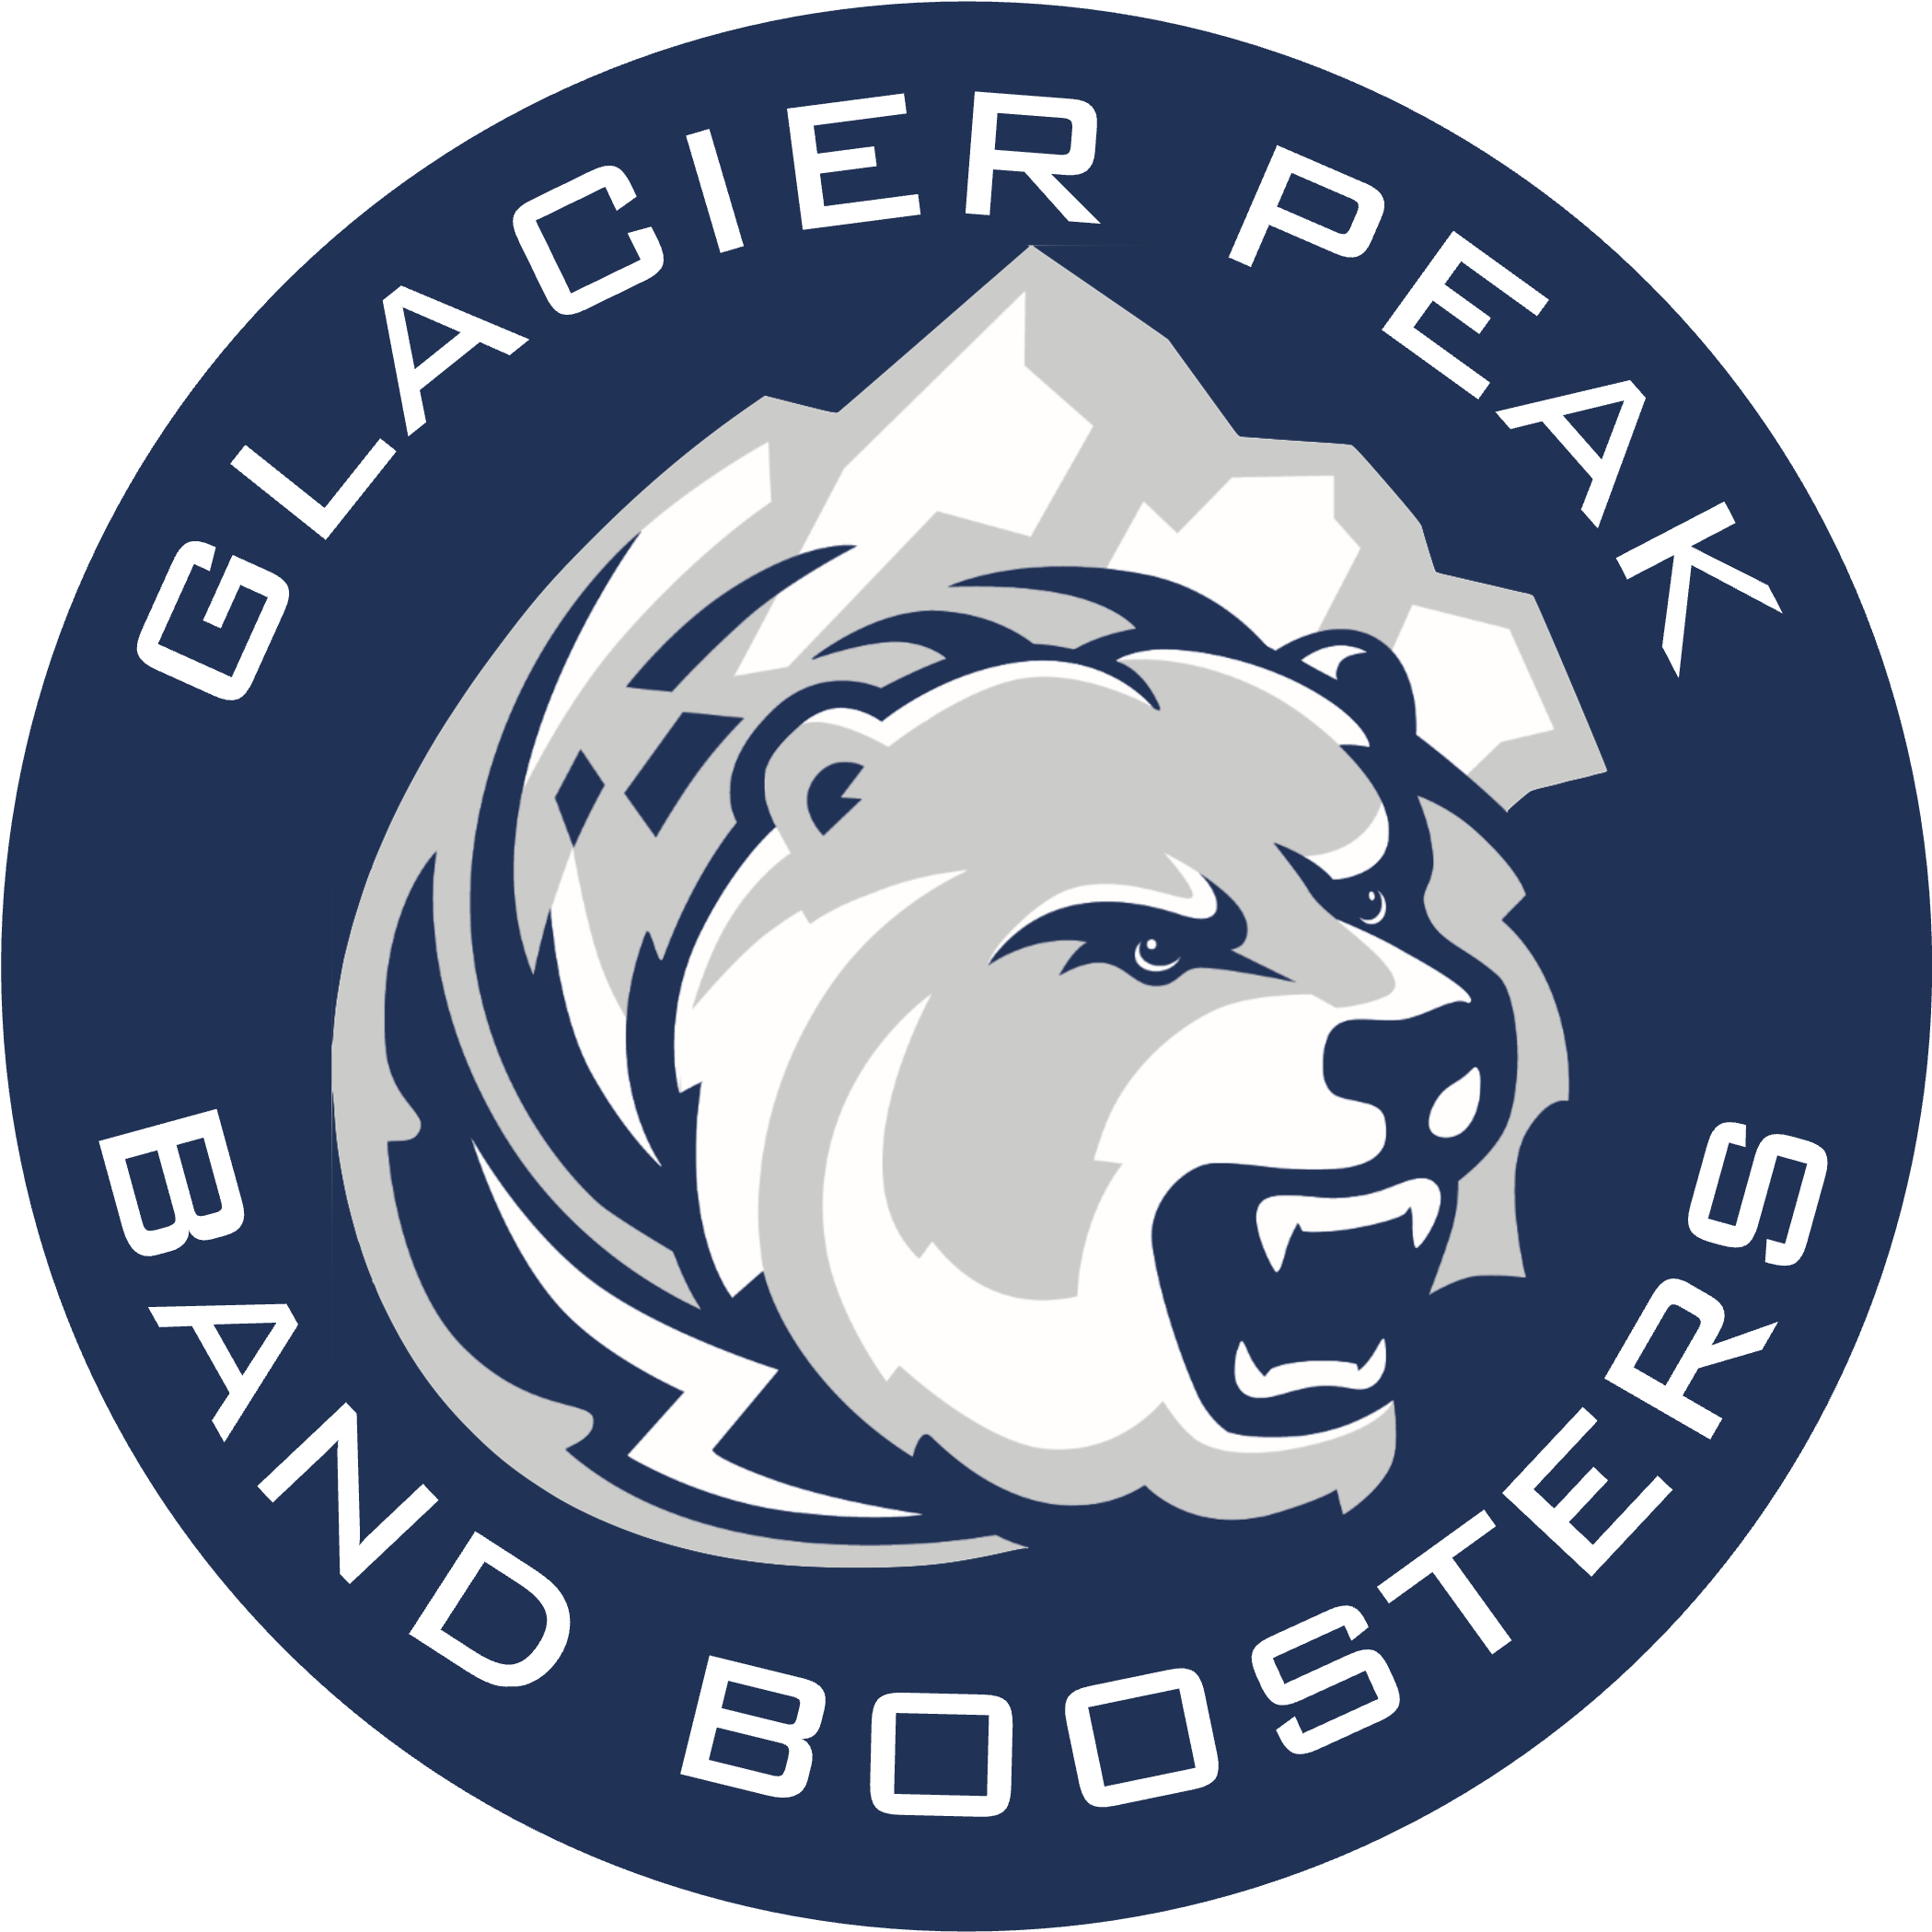 Glacier Peak High School Band Booster Club